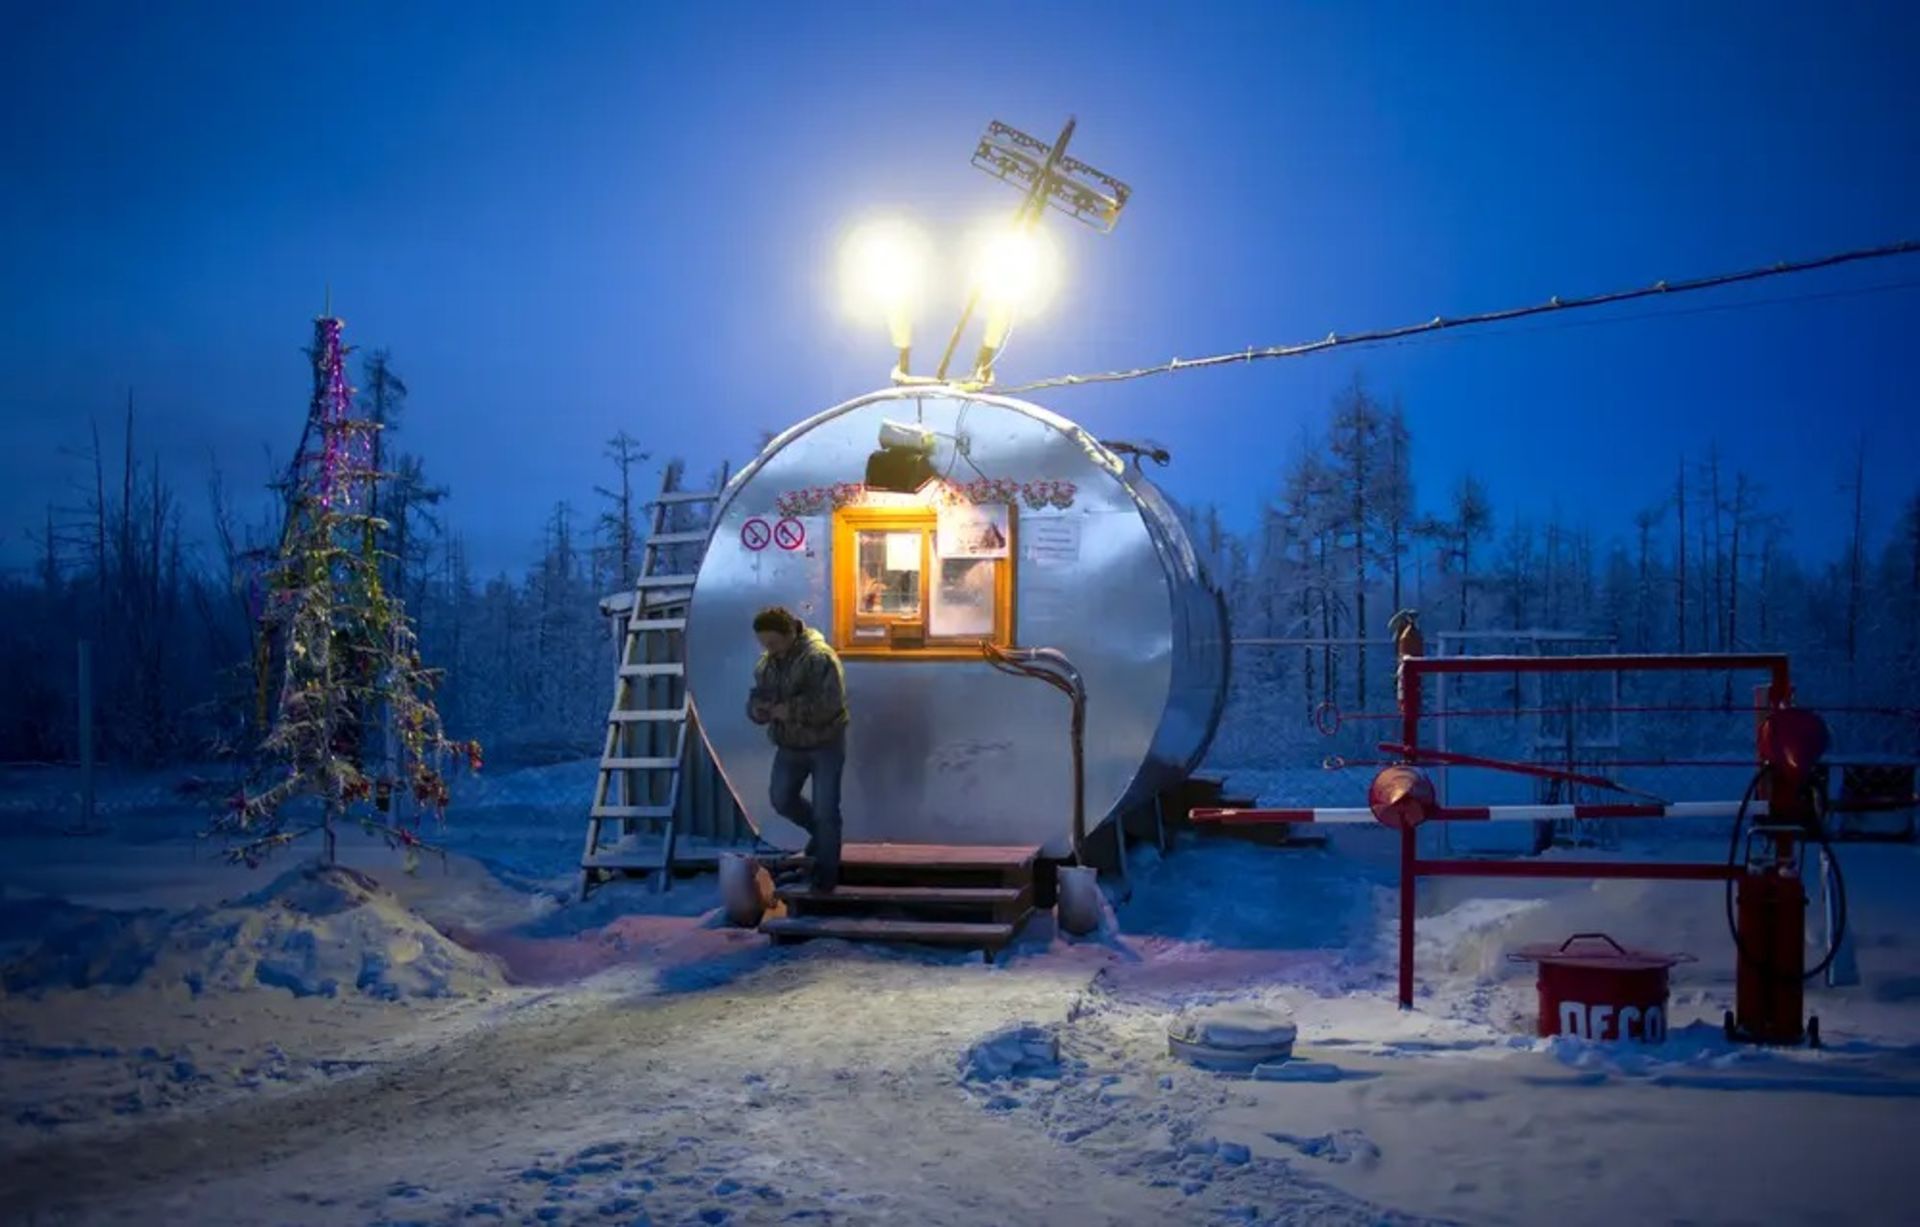 پمپ بنزینی در یاکوتسک کارگر برف درخت کریسمس 